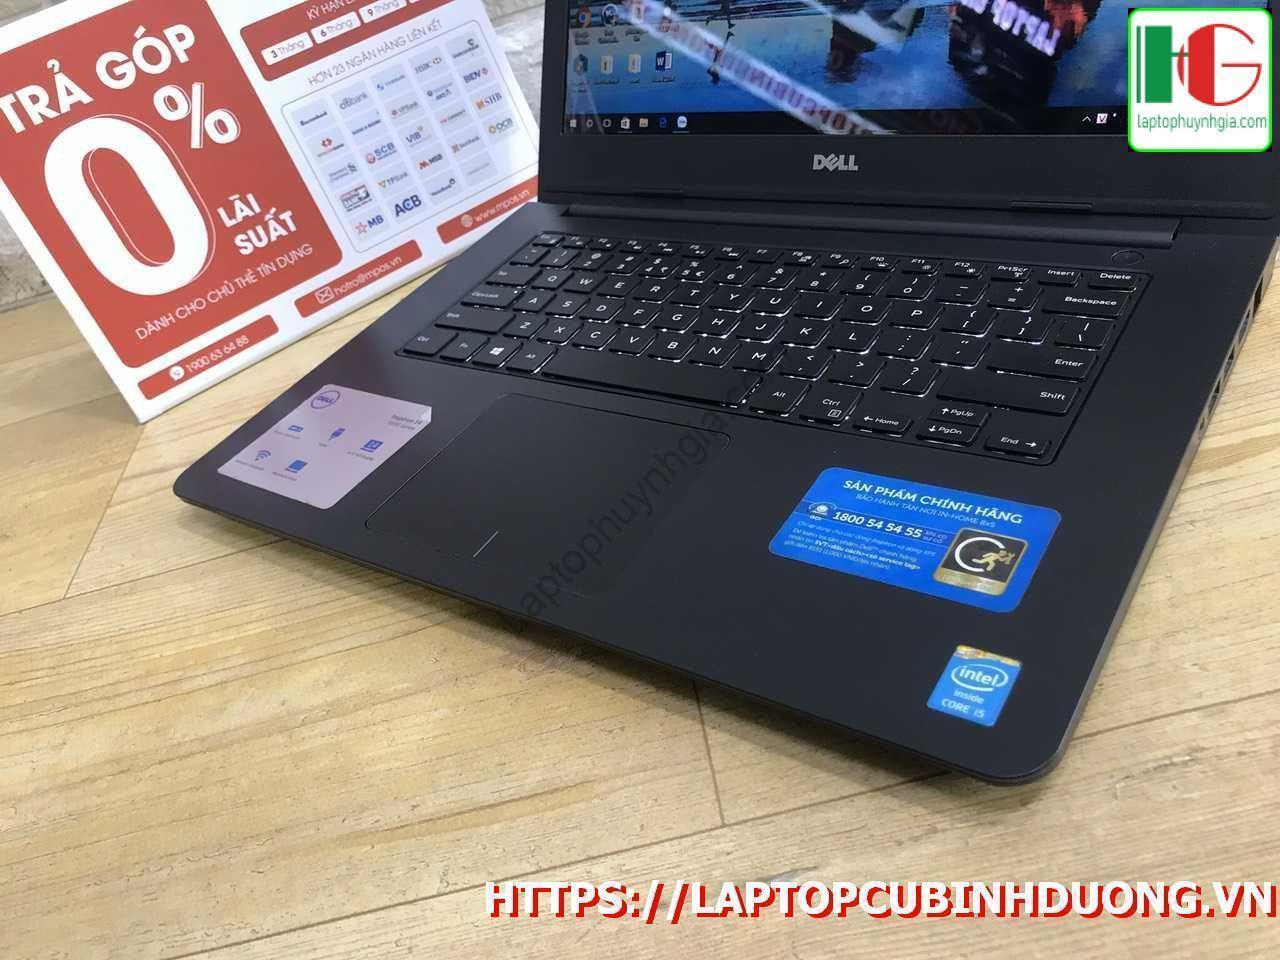 Dell N5447 I5 4210u 6g Ssd 128 Lcd 14 Laptopcubinhduong.vn [kích Thước Gốc] Result Copy